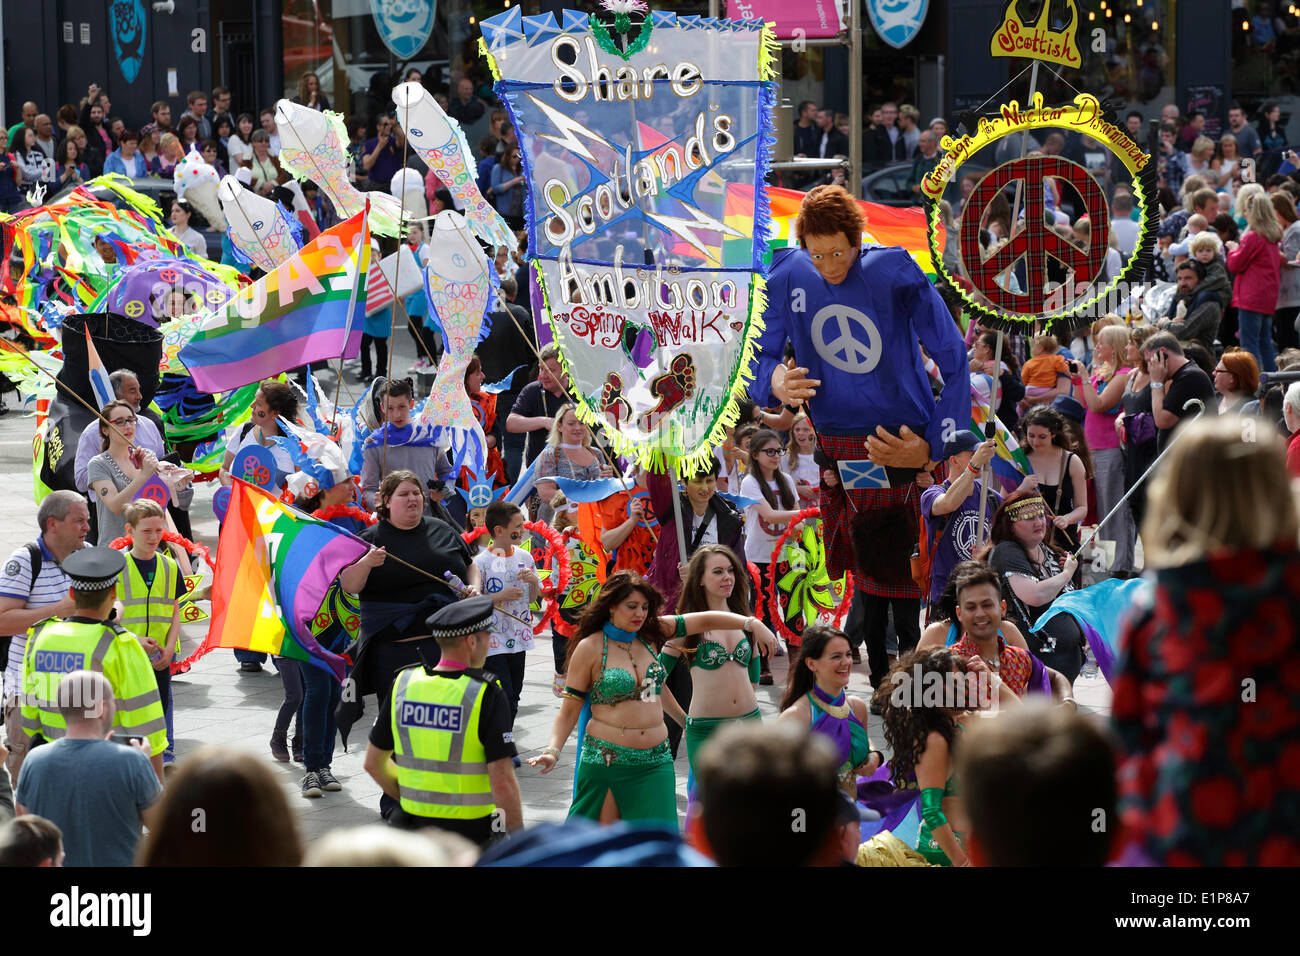 Glasgow, Écosse, Royaume-Uni, dimanche 8 juin, 2014. Les gens défilent dans le Festival du West End de Glasgow Mardi gras Parade Banque D'Images